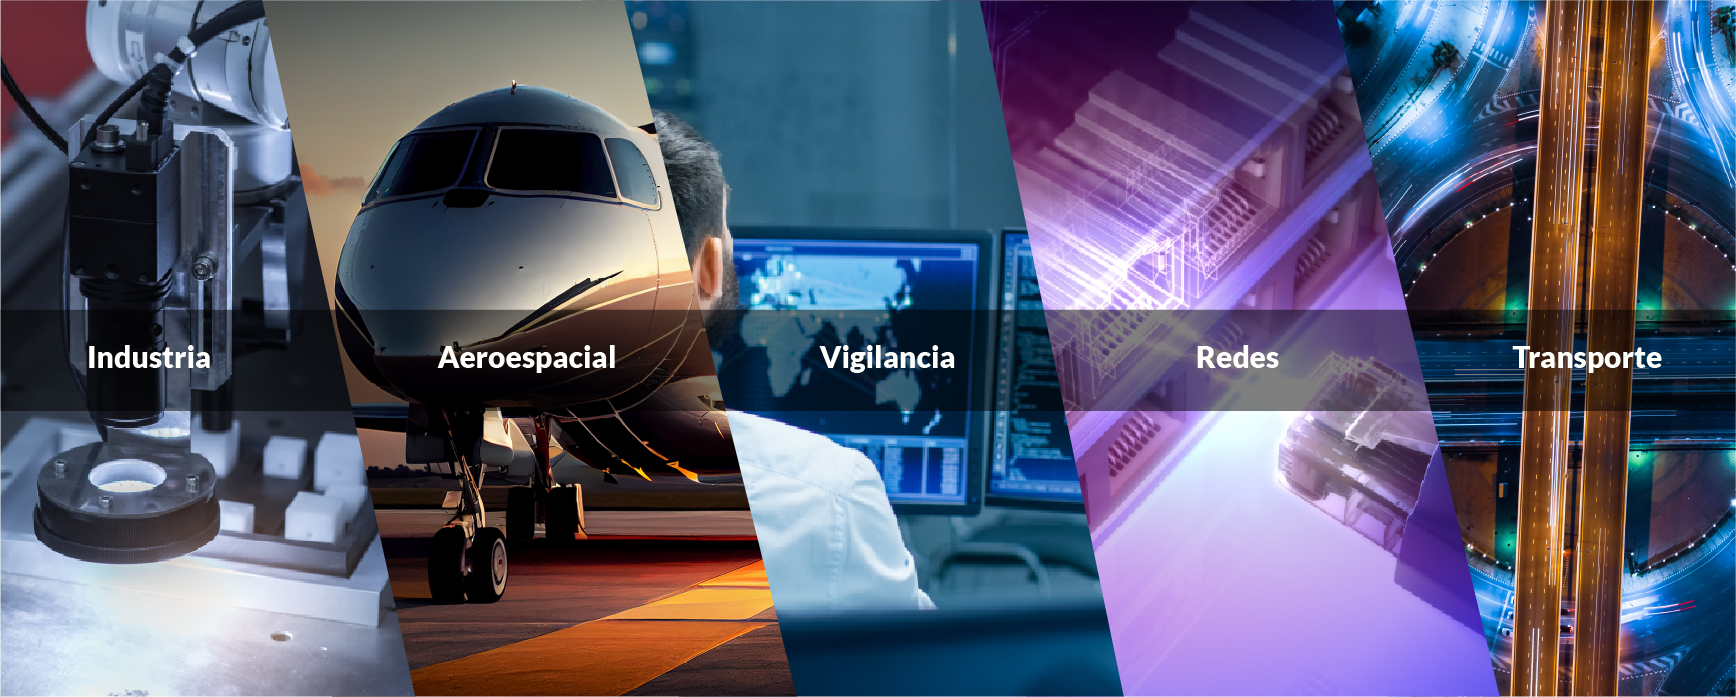 Industria / Aeroespacial / Vigilancia / Redes / Transporte